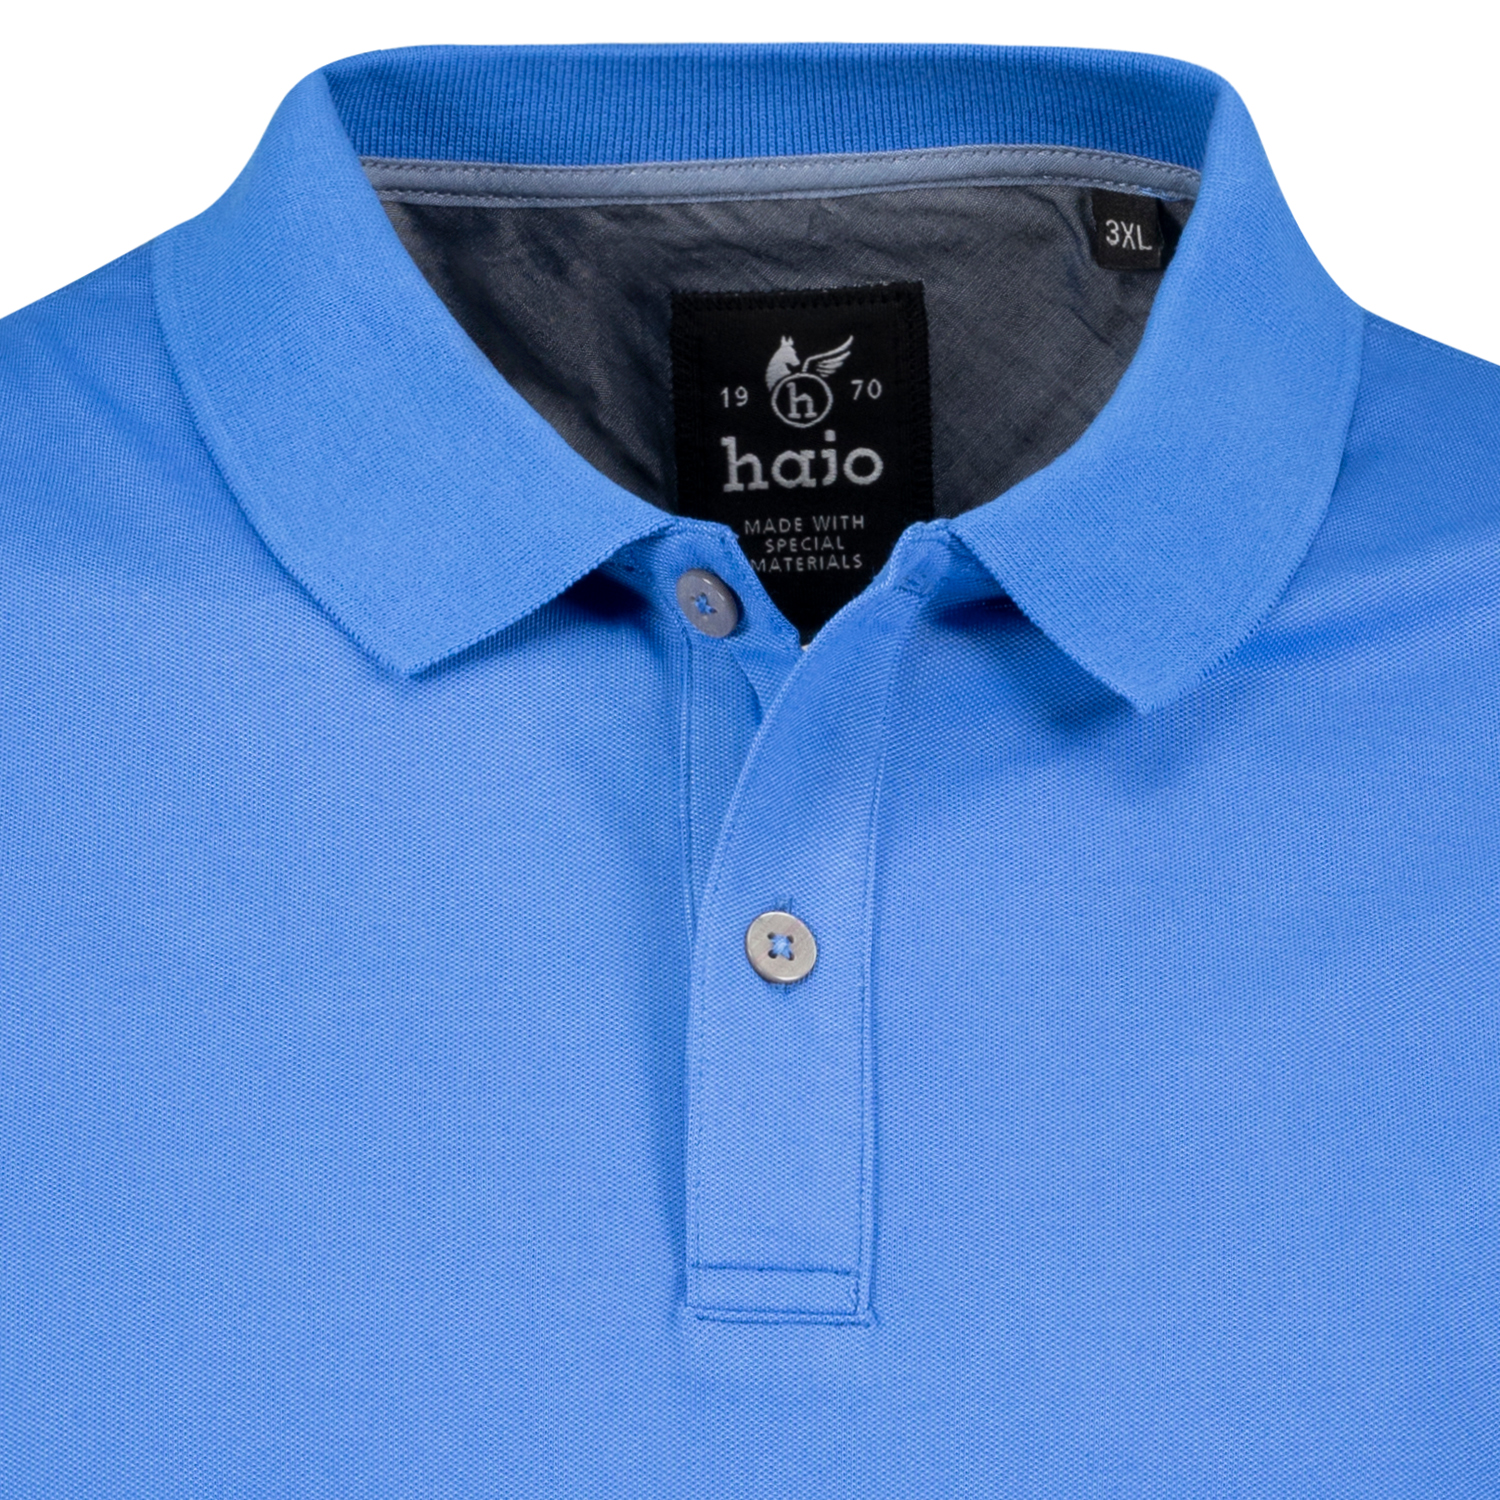 Kurzärmliges Herren Polo Shirt "stay fresh" von Hajo azurblau in großen Größen 3XL bis 6XL